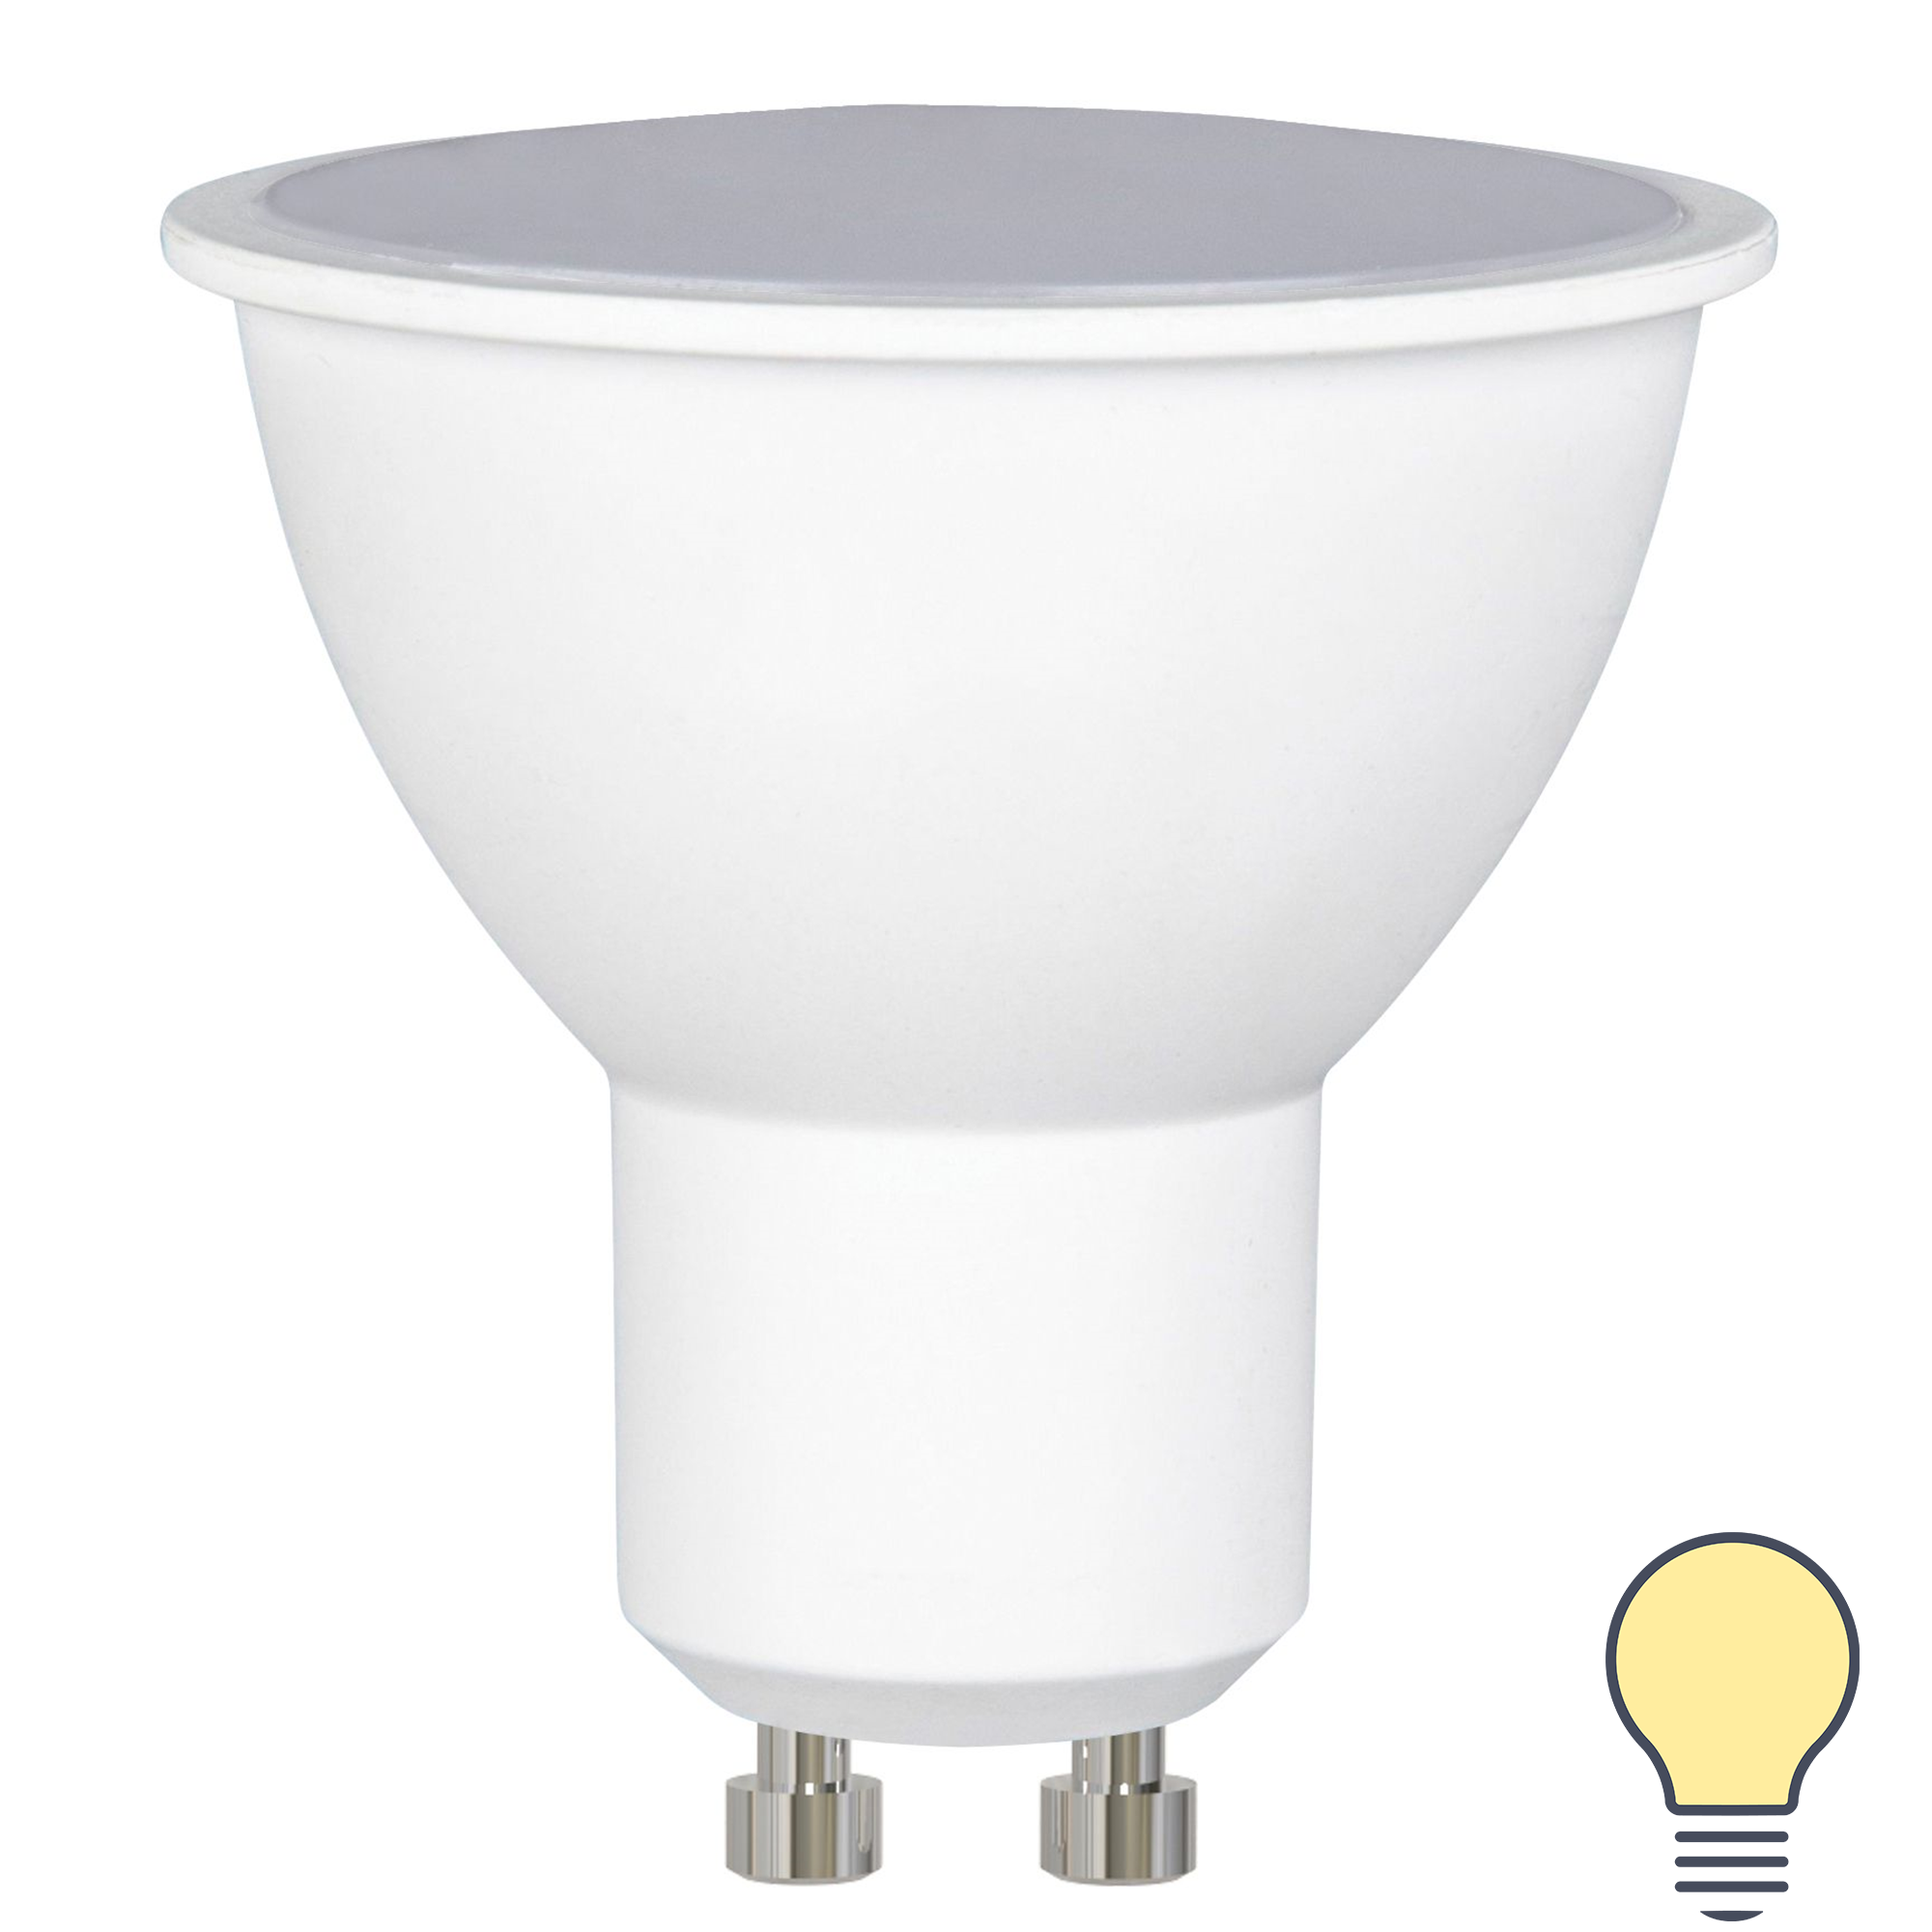 Лампа светодиодная Volpe Norma GU10 175-250 В 10 Вт спот 800 лм теплый белый цвет света